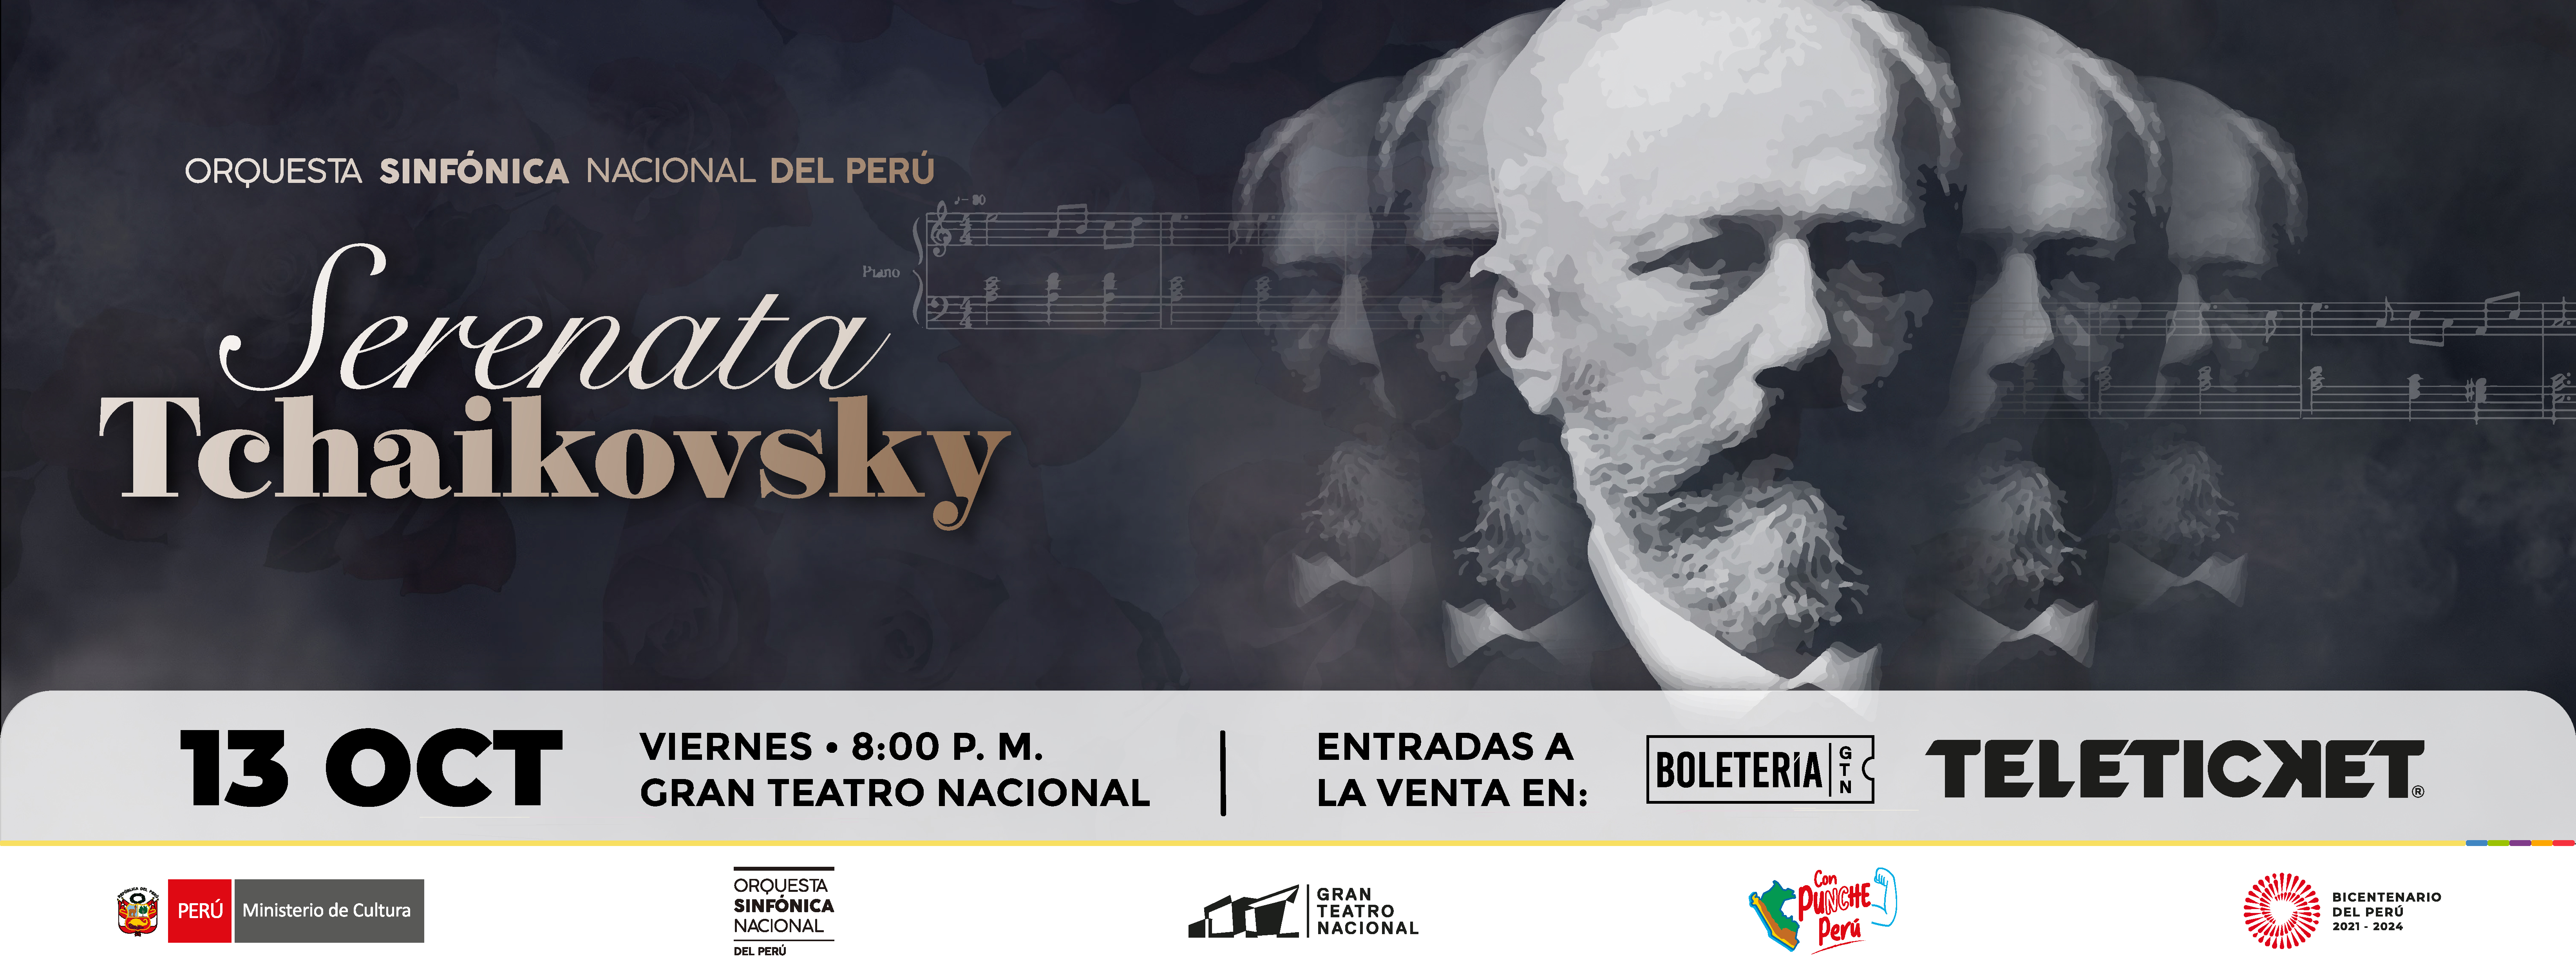 Orquesta Sinfónica Nacional del Perú presenta su concierto “Serenata Tchaikovsky”